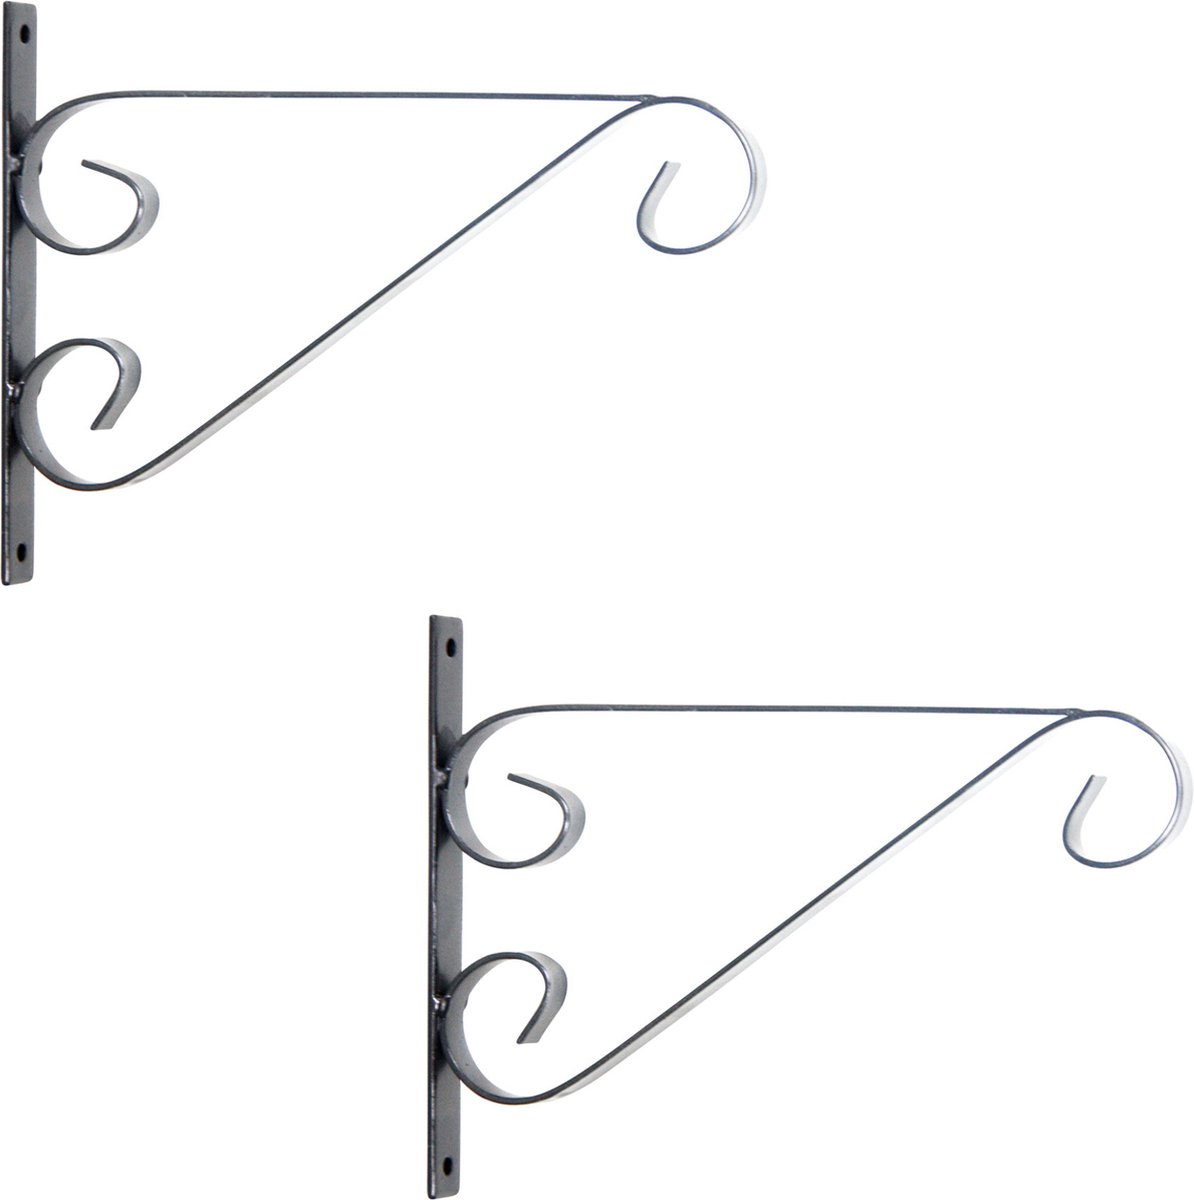 2x Zilveren hangpot haken metaal met krul - 27 x 19 cm - Muurpothangers voor plantenbakken/bloembakken - Tuin/muur decoraties - Merkloos